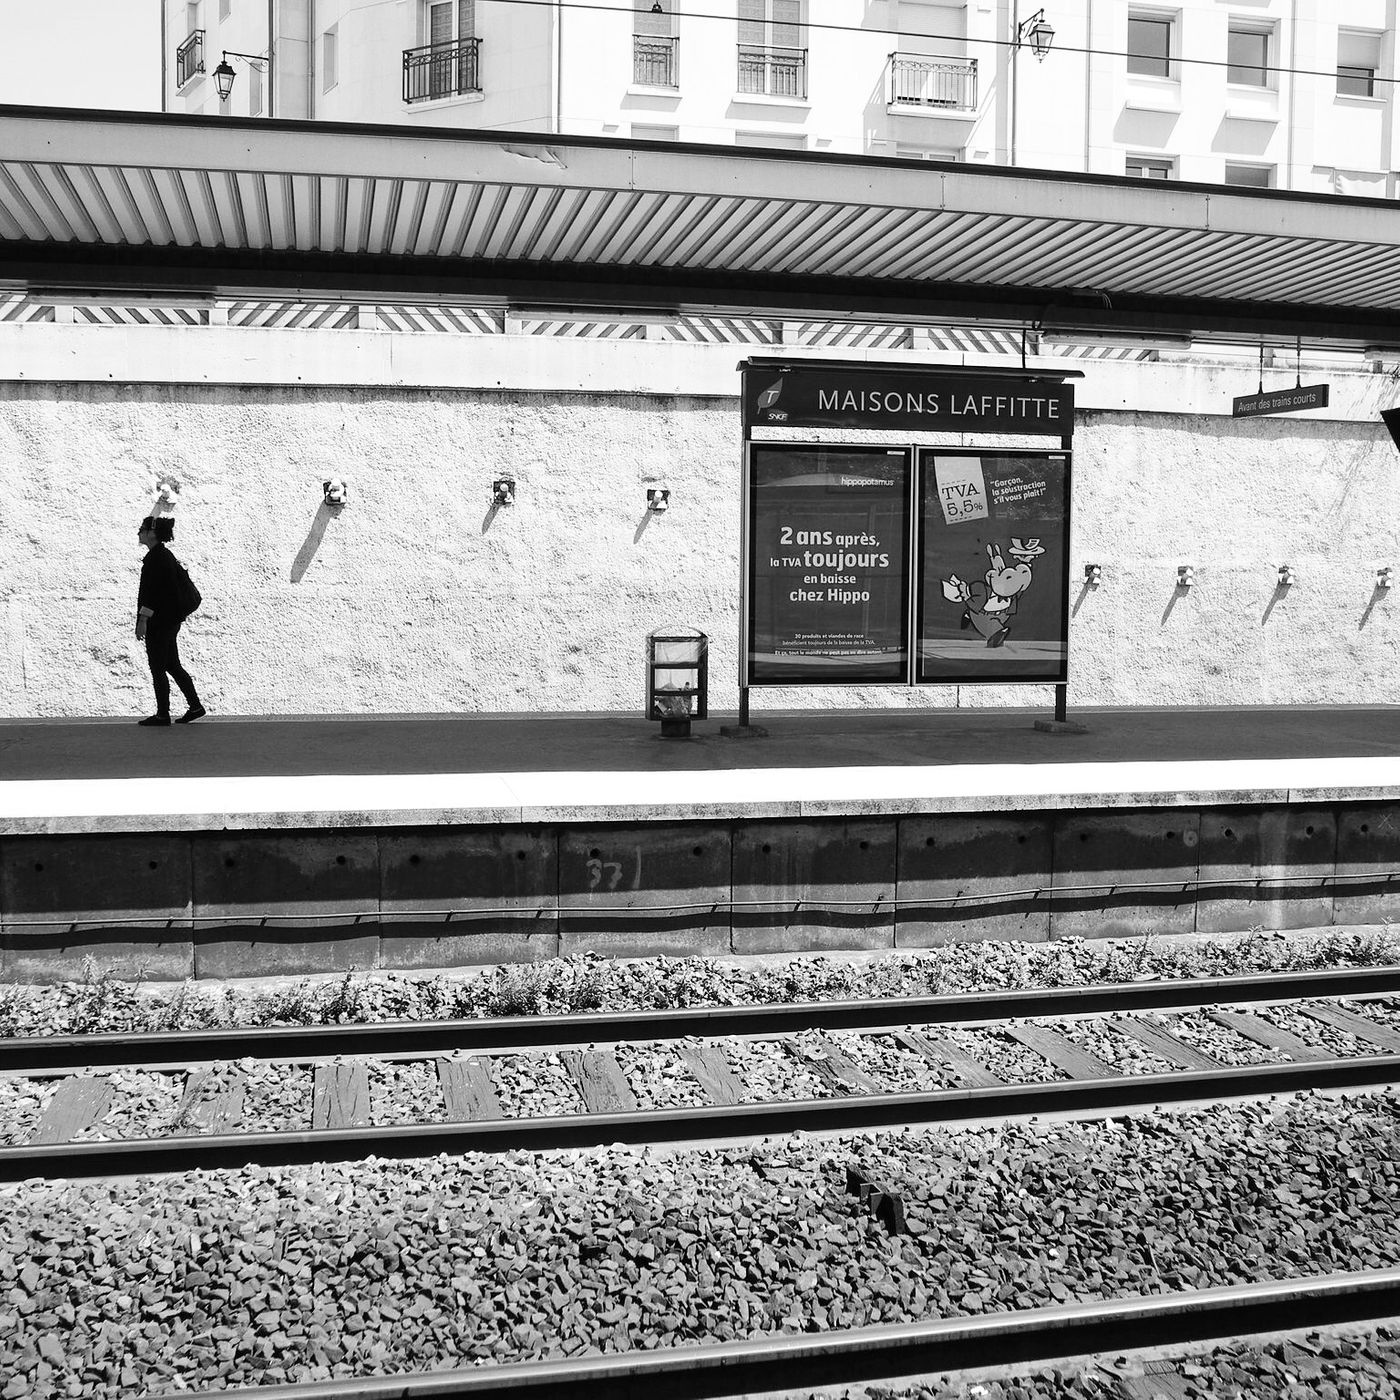 附了一張十年前拍的照片，是RER月台而不是地鐵